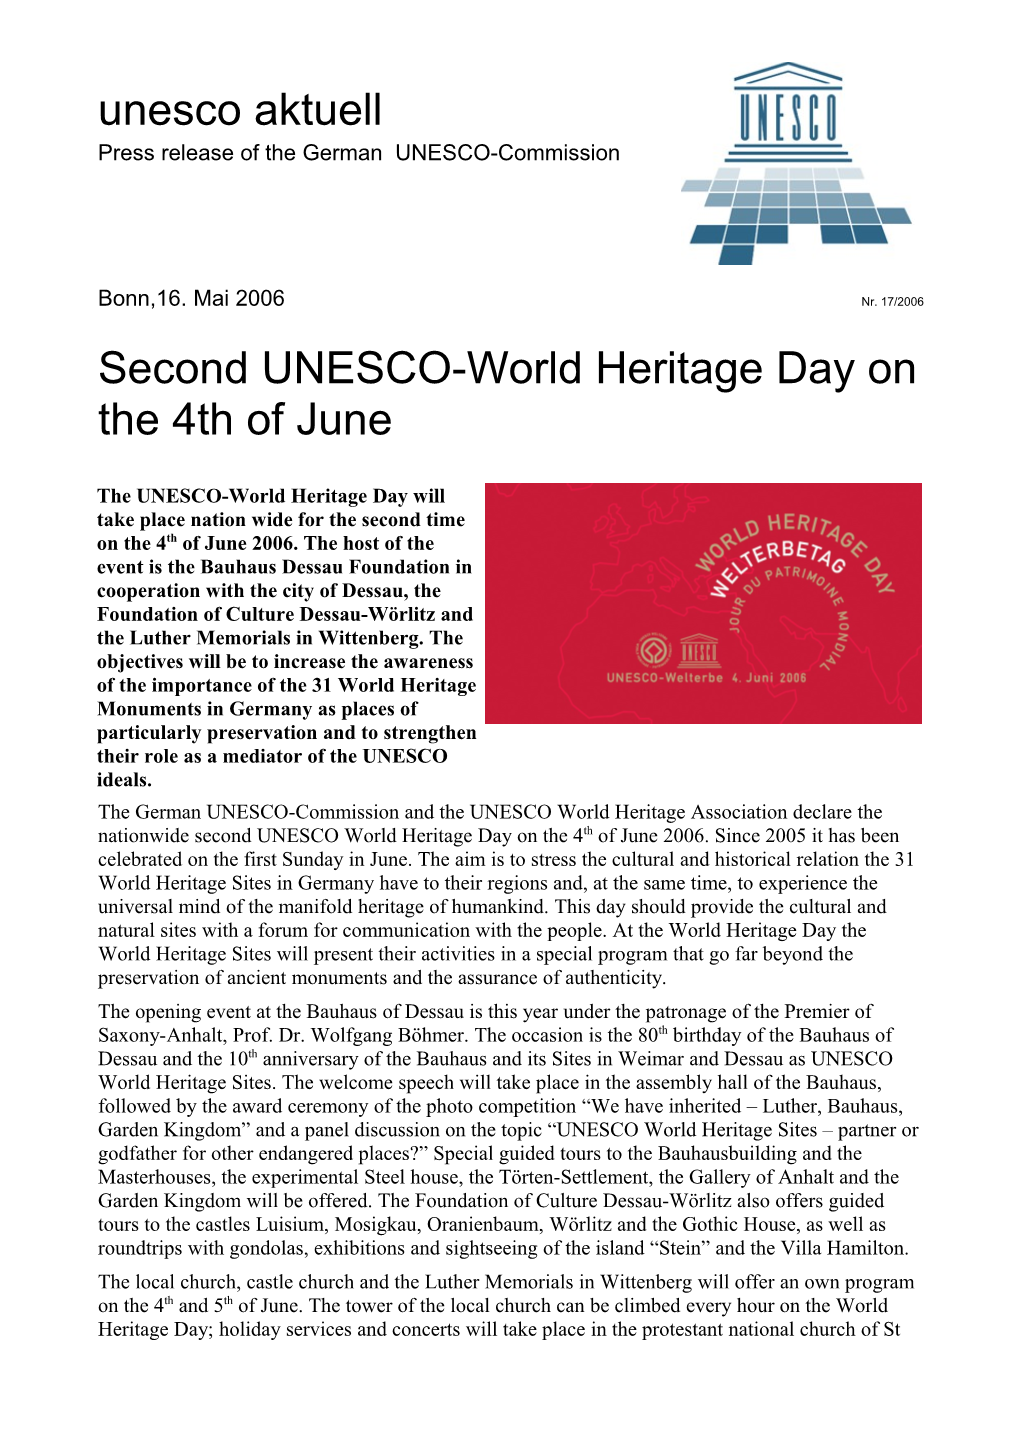 Zweiter Unesco-Welterbetag